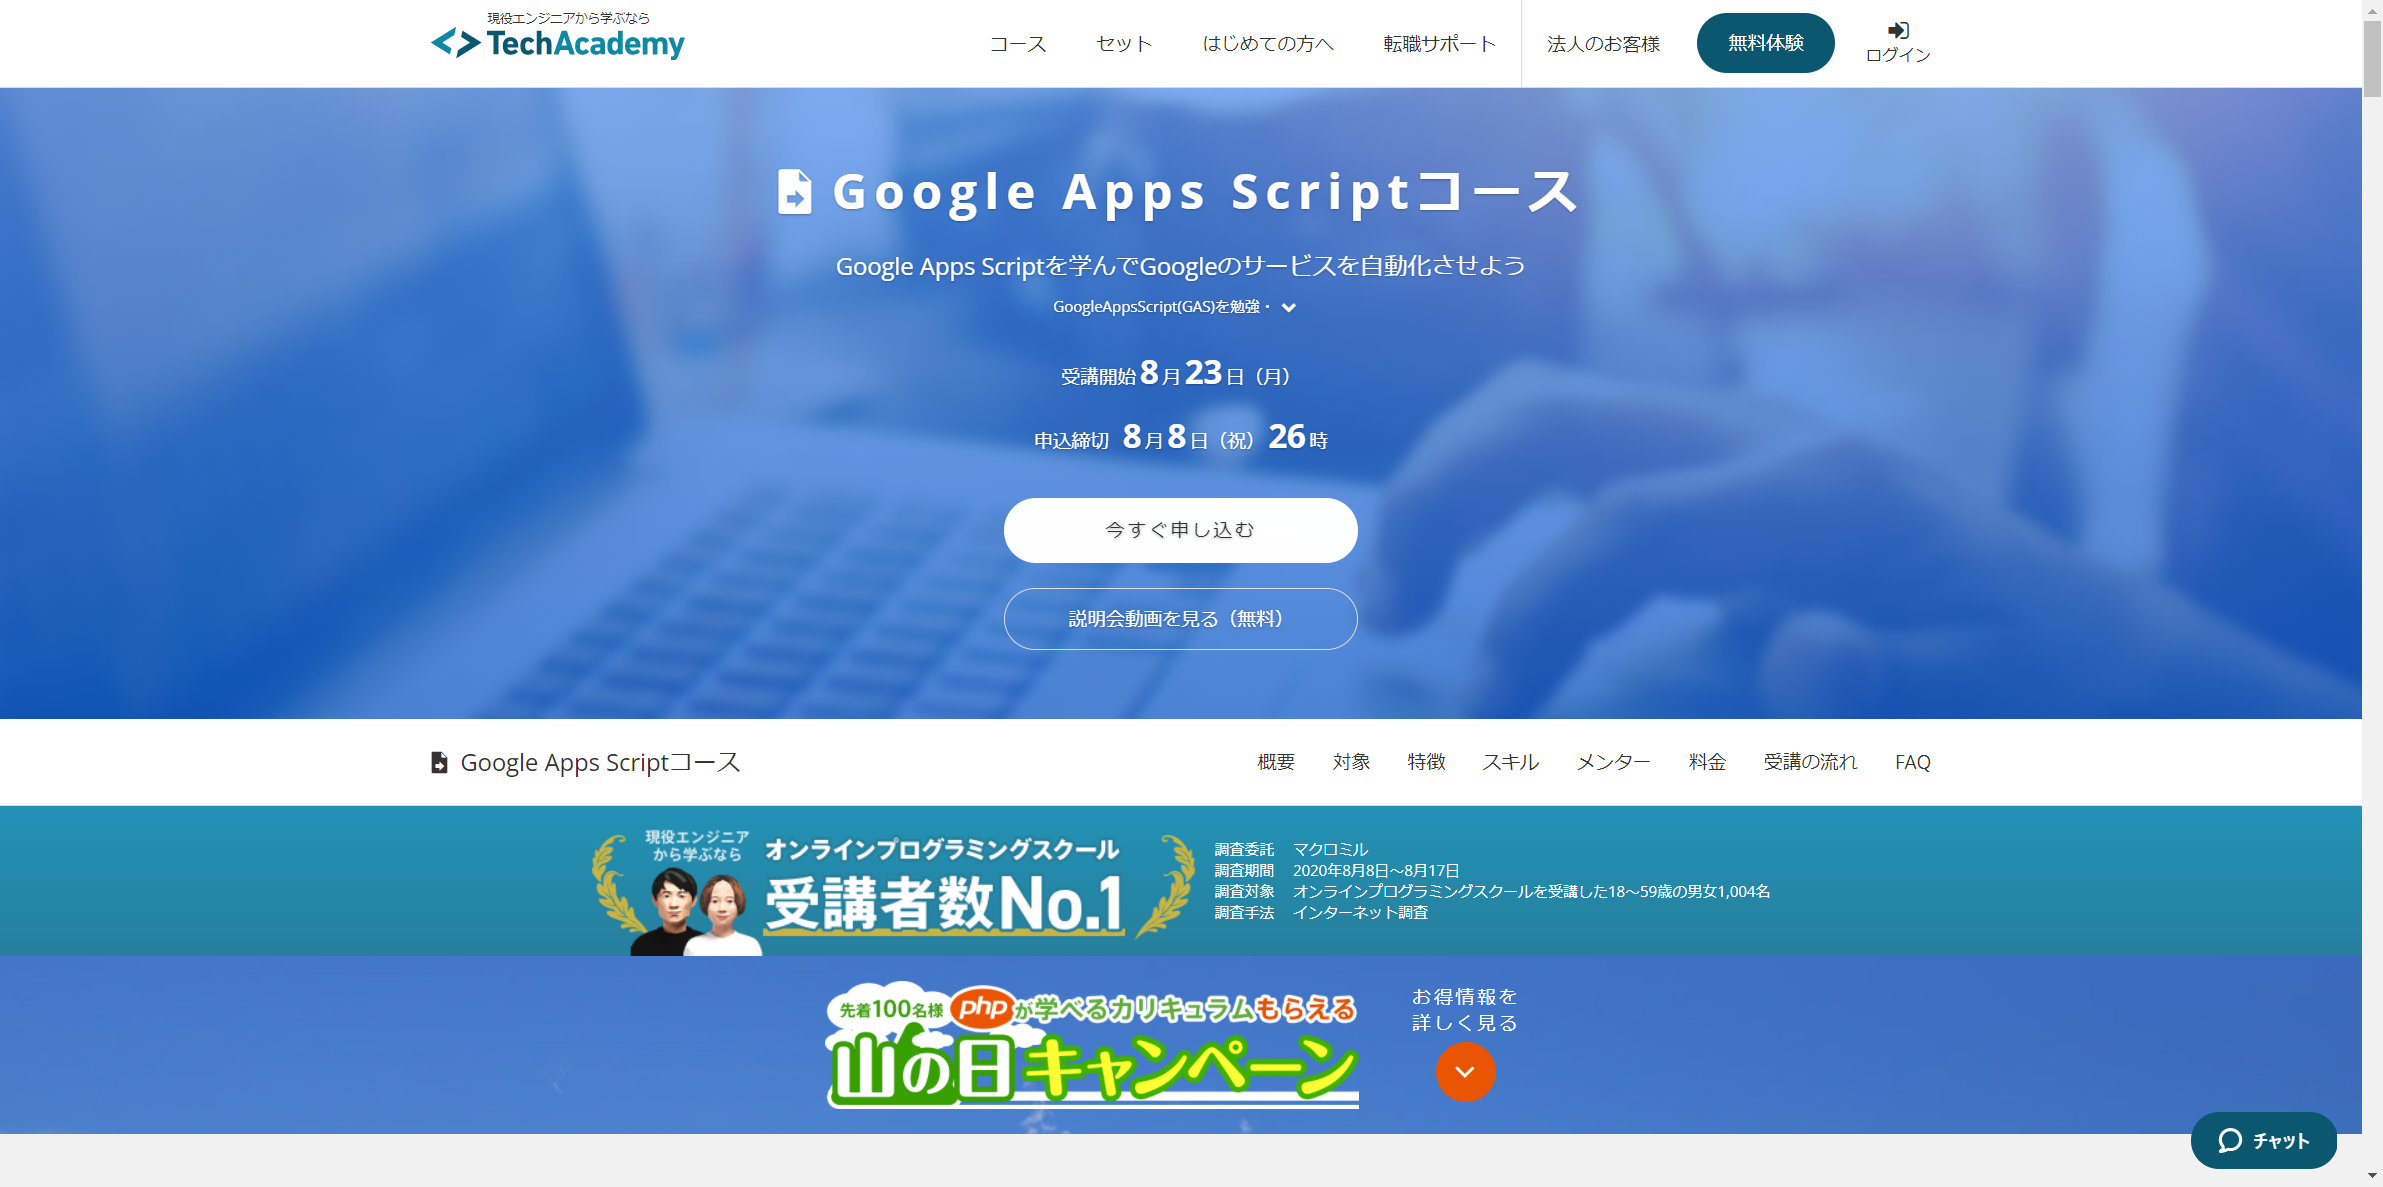 TechAcademy Google Apps Scriptコース